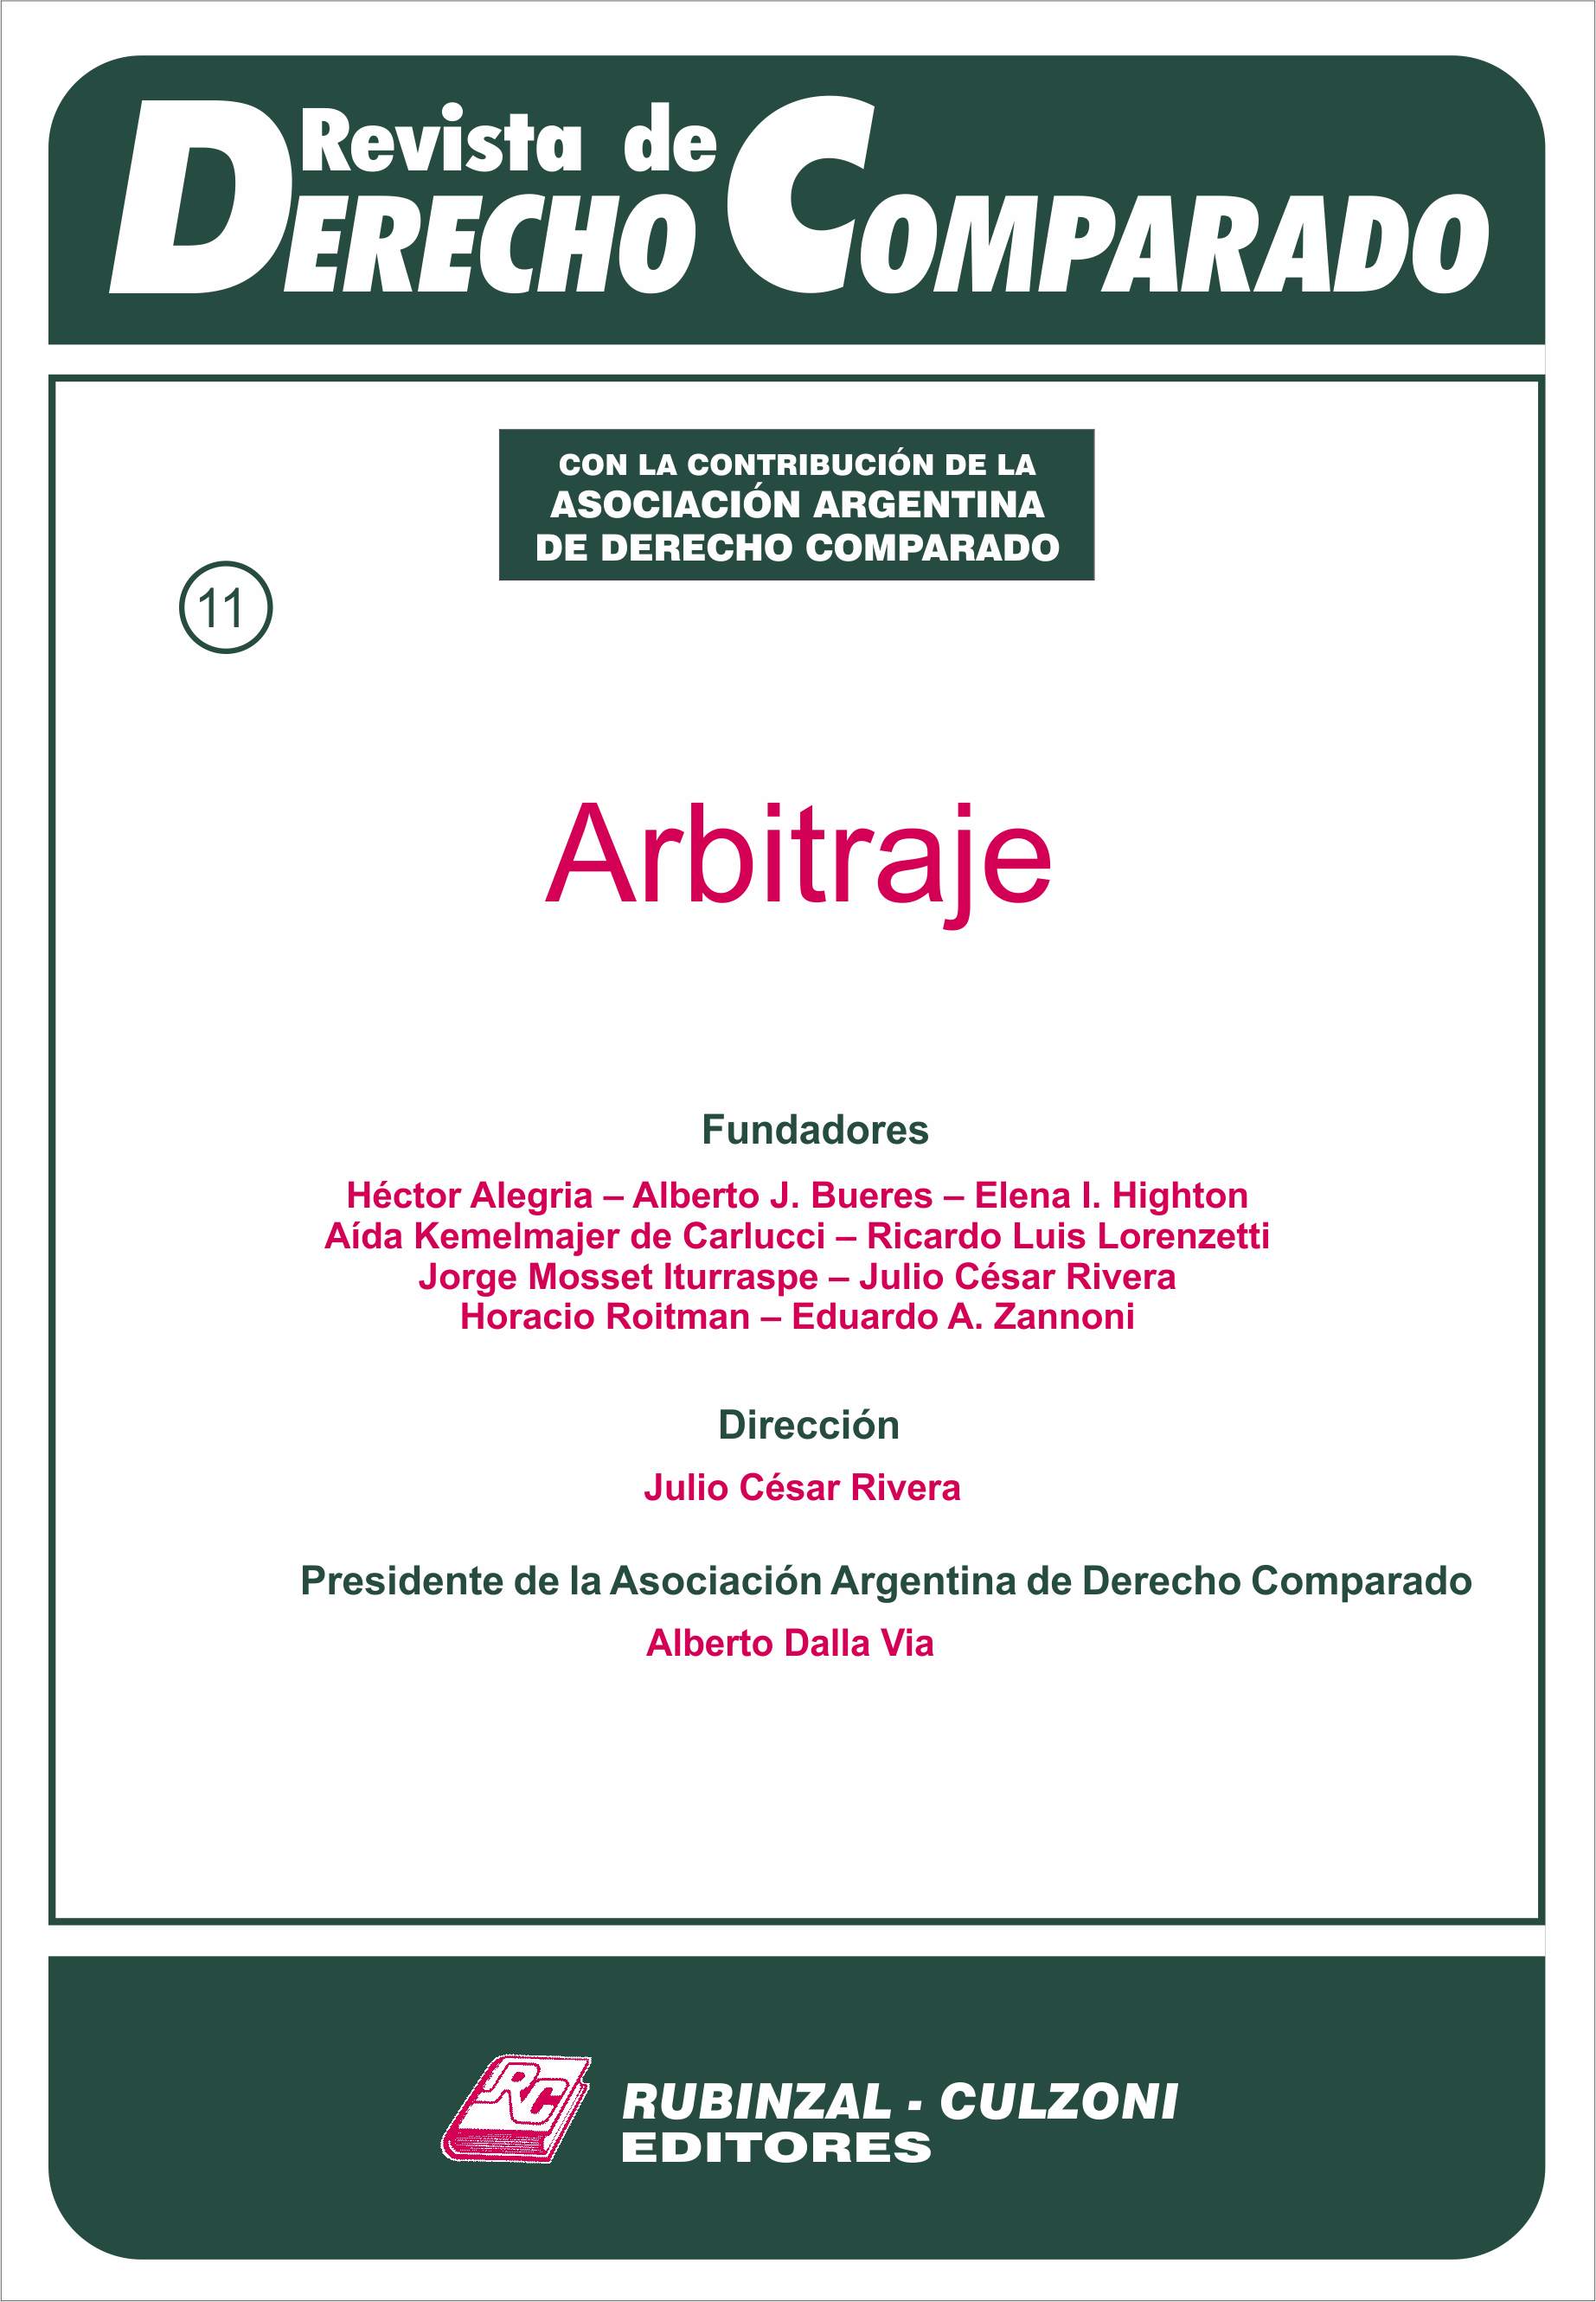 Revista de Derecho Comparado - Doctrina (Arbitraje).